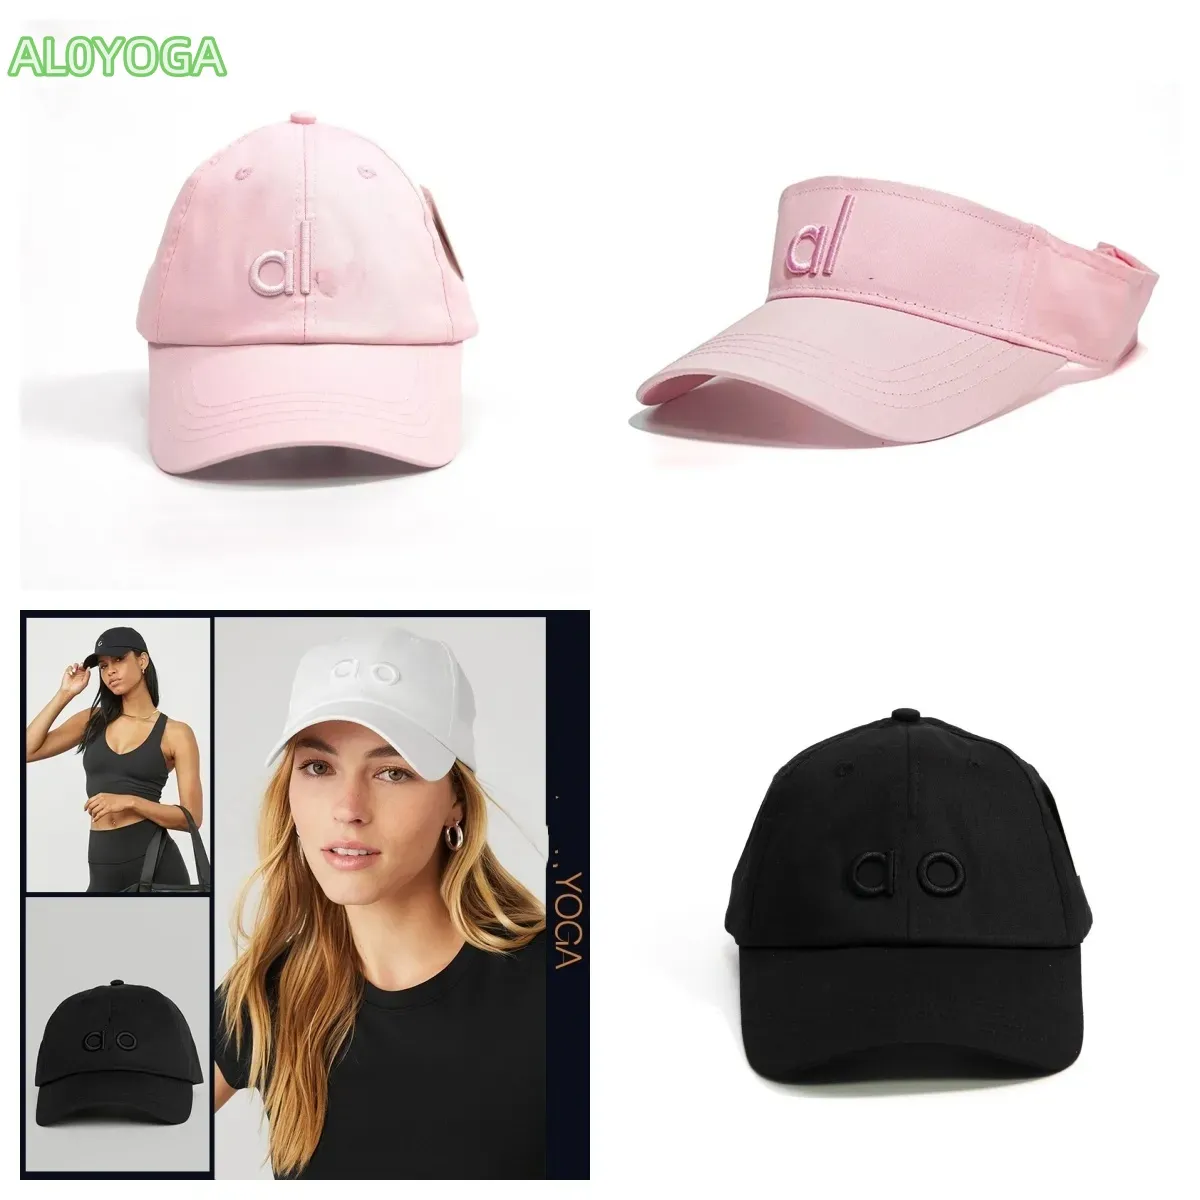 Al0yoga-5 broderad baseballmössa mens och kvinnor sommar casual sunblock hatt retro klassiker